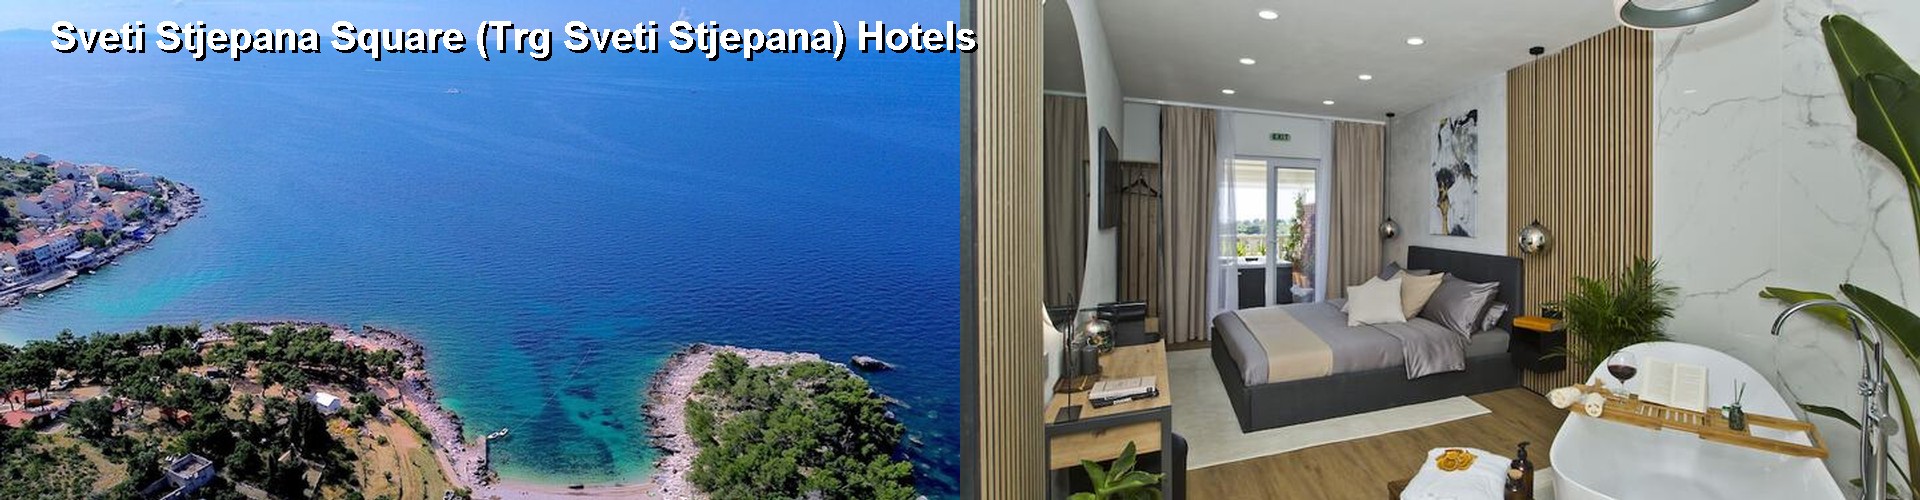 5 Best Hotels near Sveti Stjepana Square (Trg Sveti Stjepana)